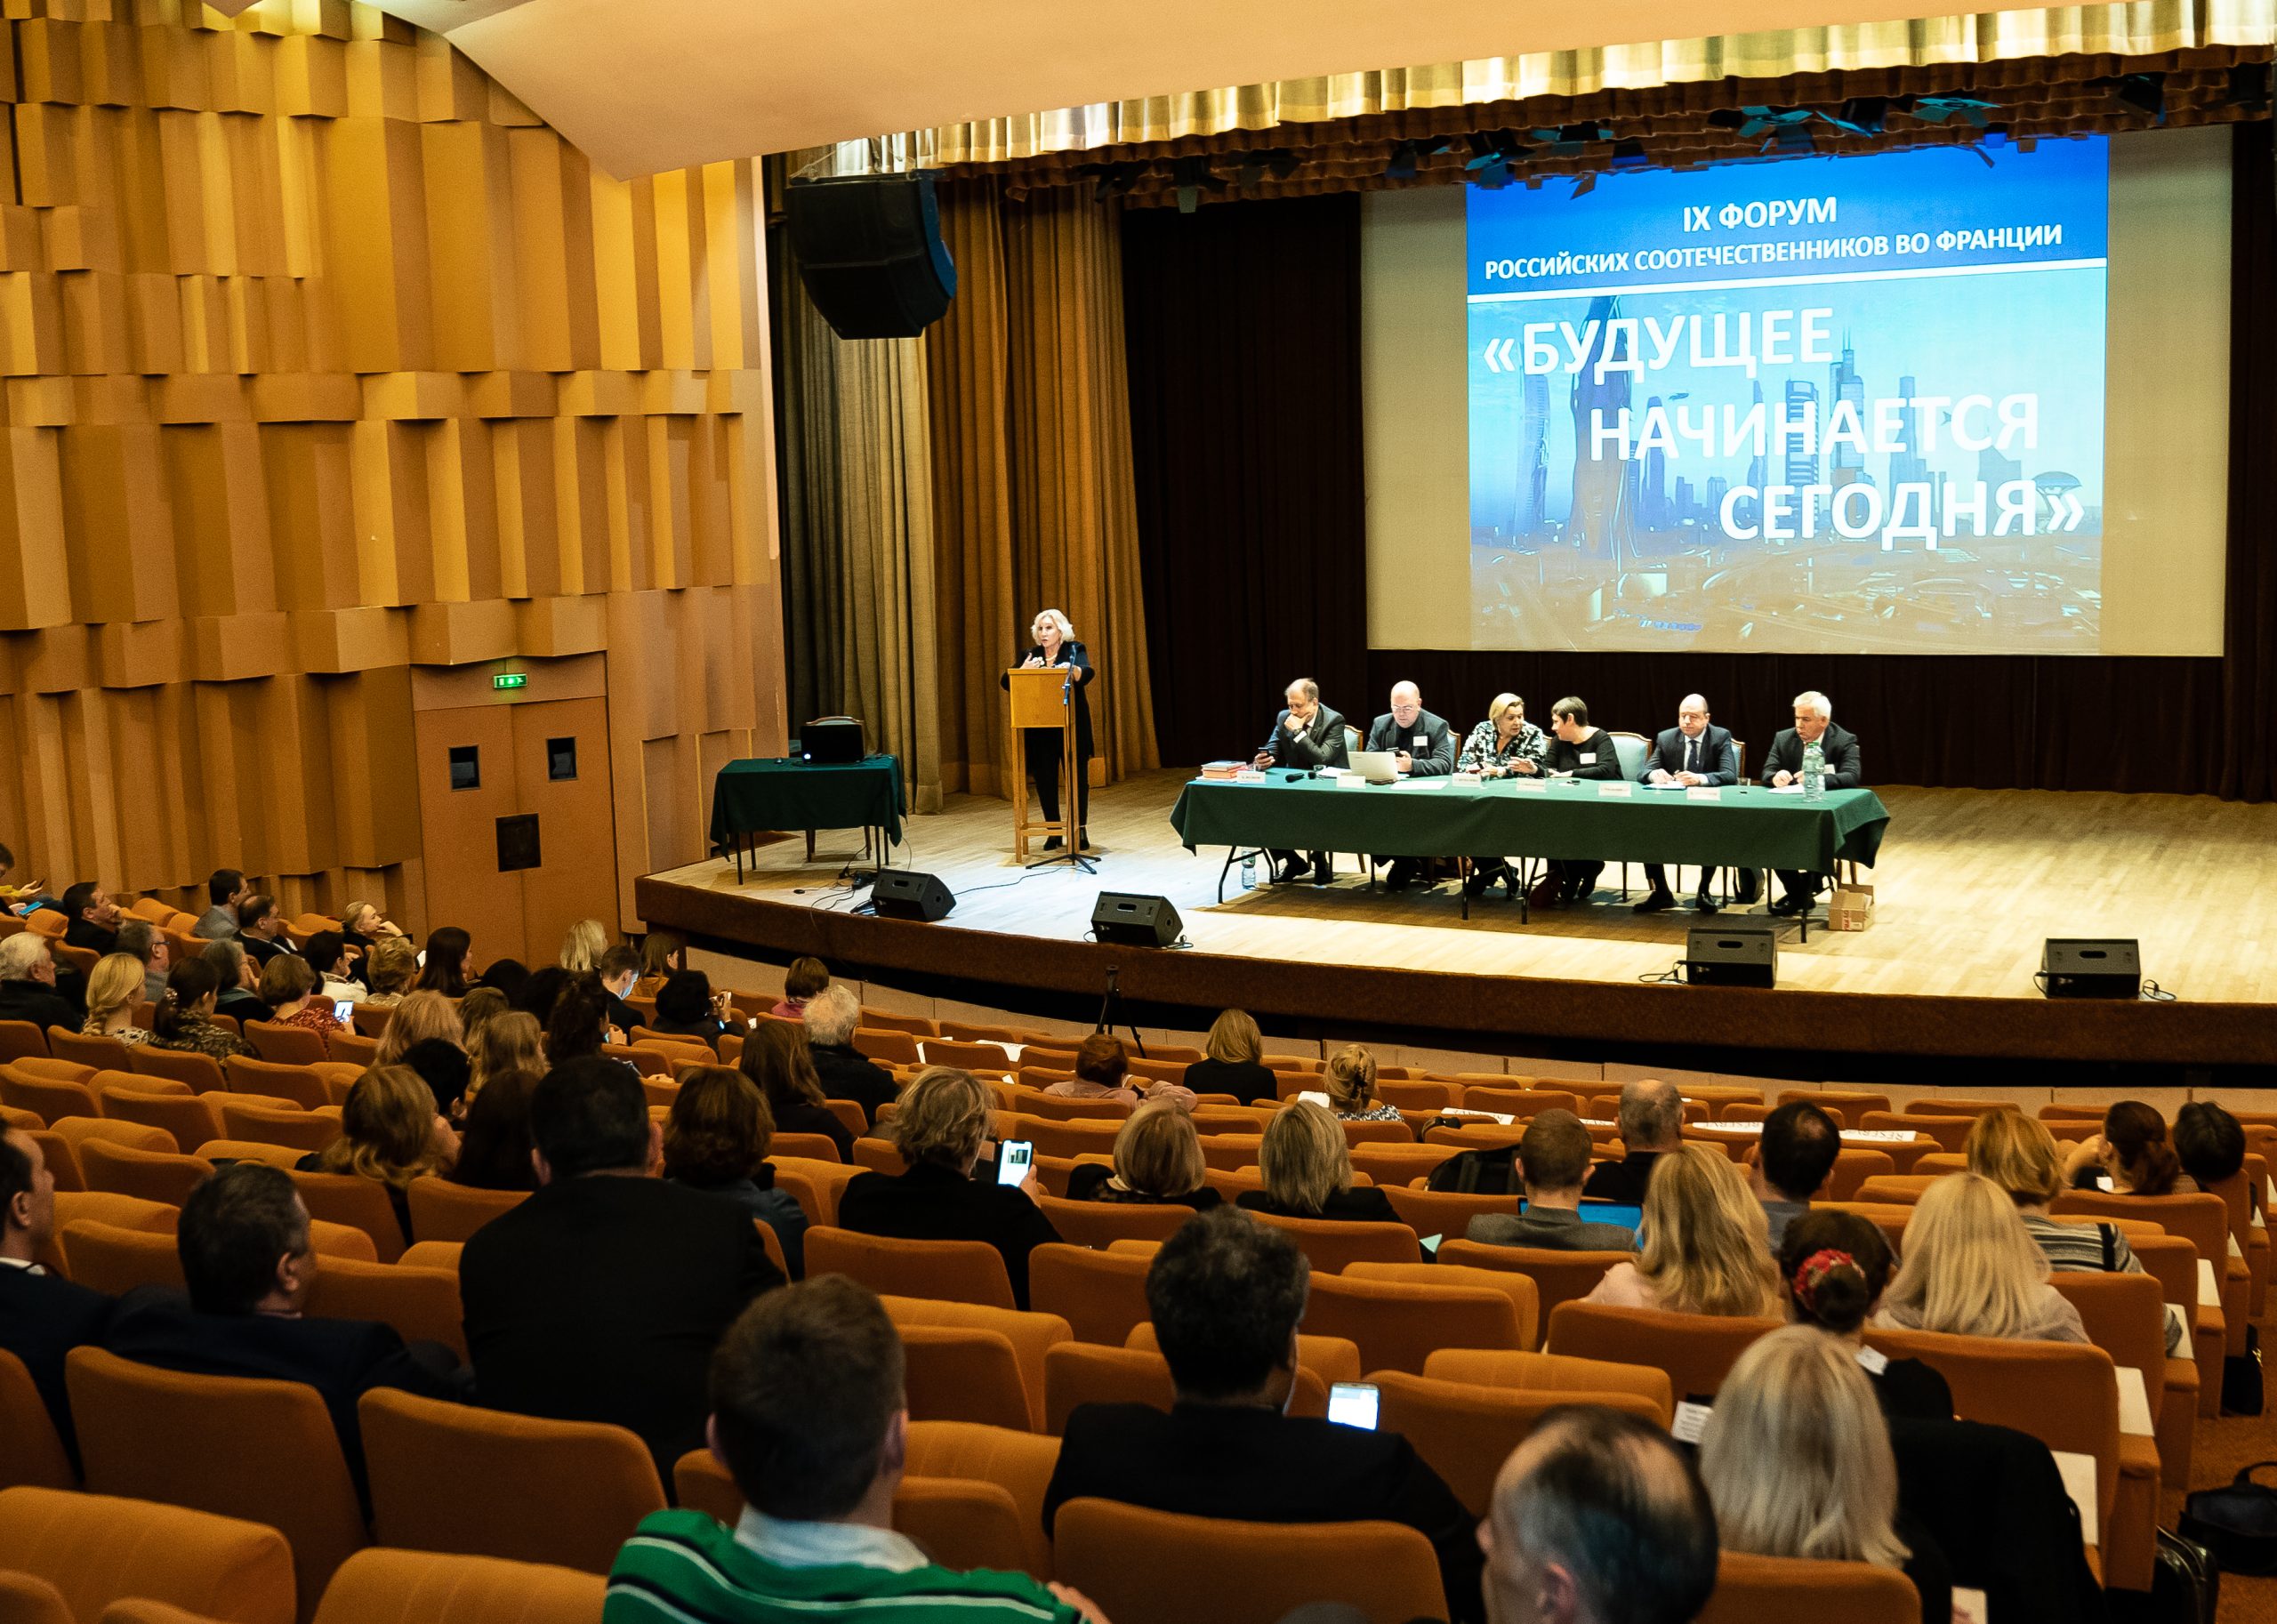 «Будущее начинается сегодня»: Девятый Форум российских соотечественников Франции